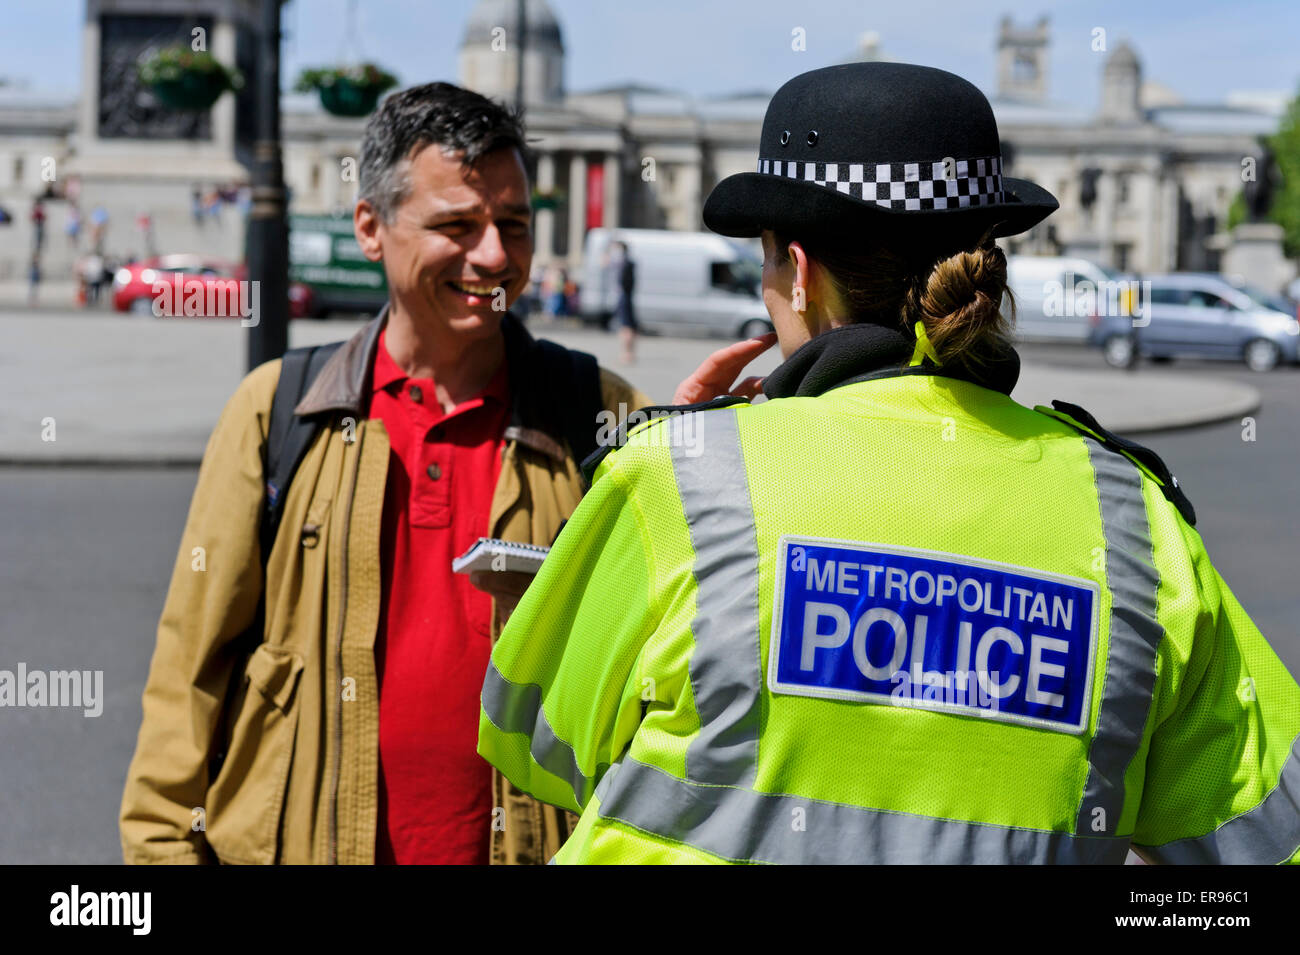 Une femme officier de police métropolitaine de parler d'un membre du public à Londres, Angleterre, Royaume-Uni. Banque D'Images